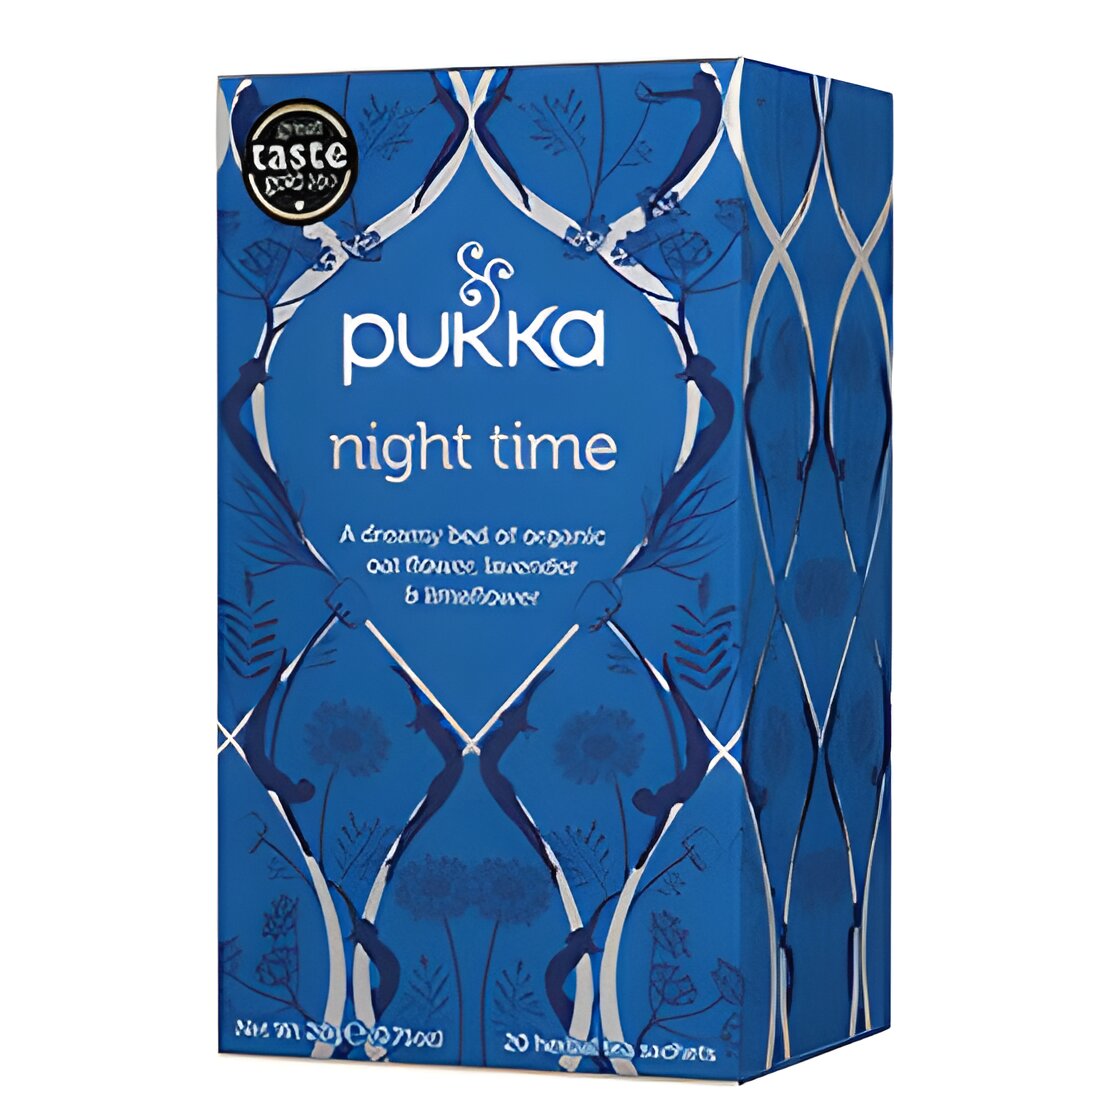 Free Pukka Tea Welcome Pack